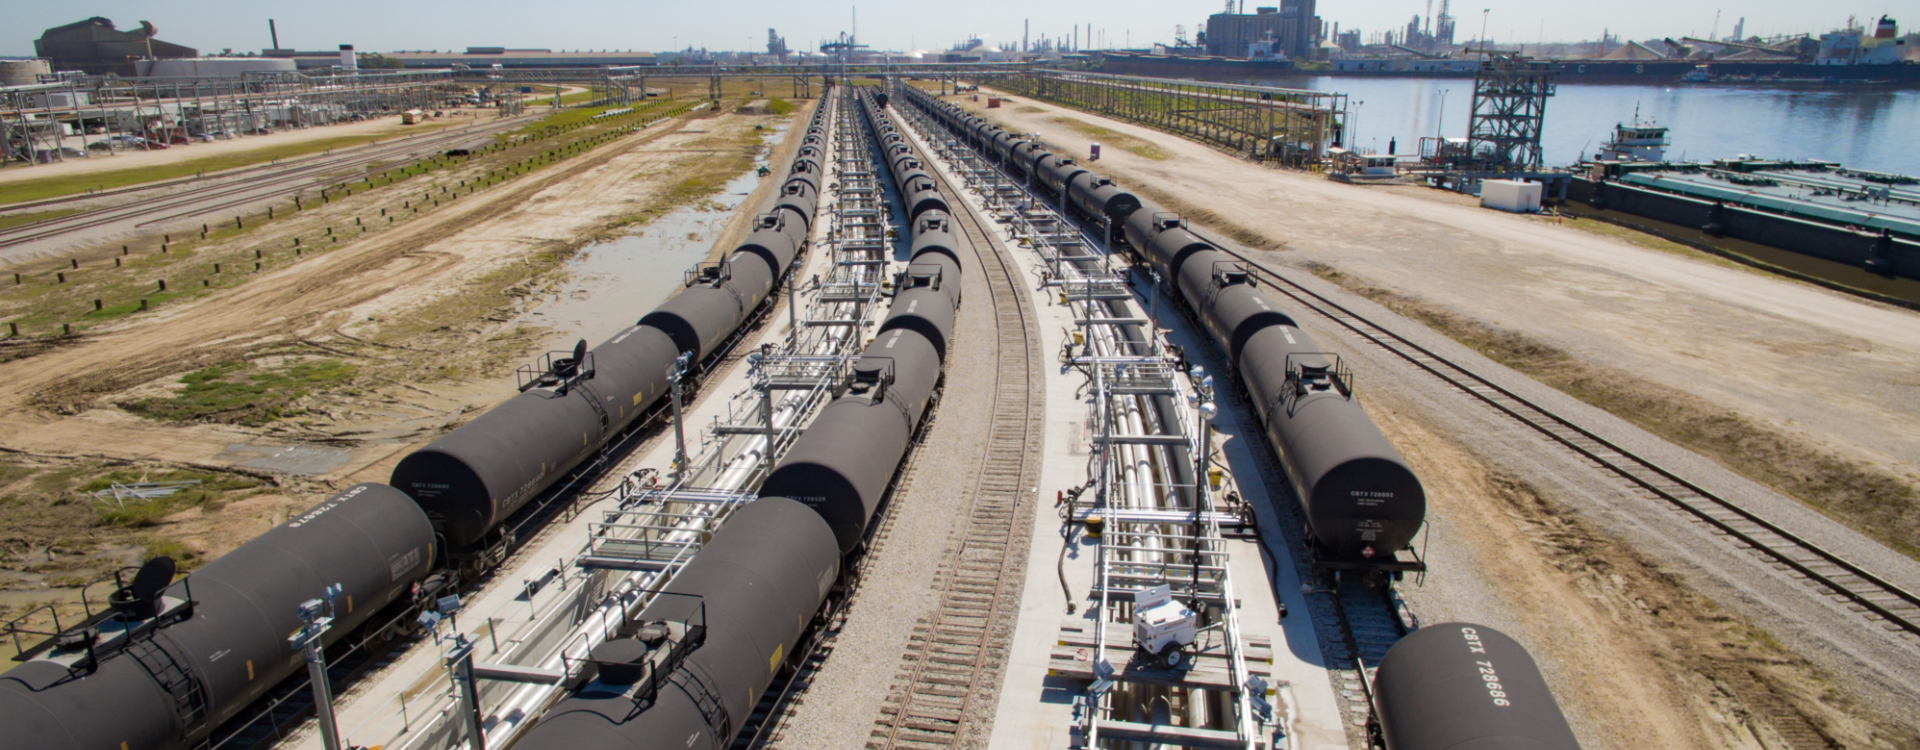 Transload Oil & Gas Railport Construction Beaumont TX